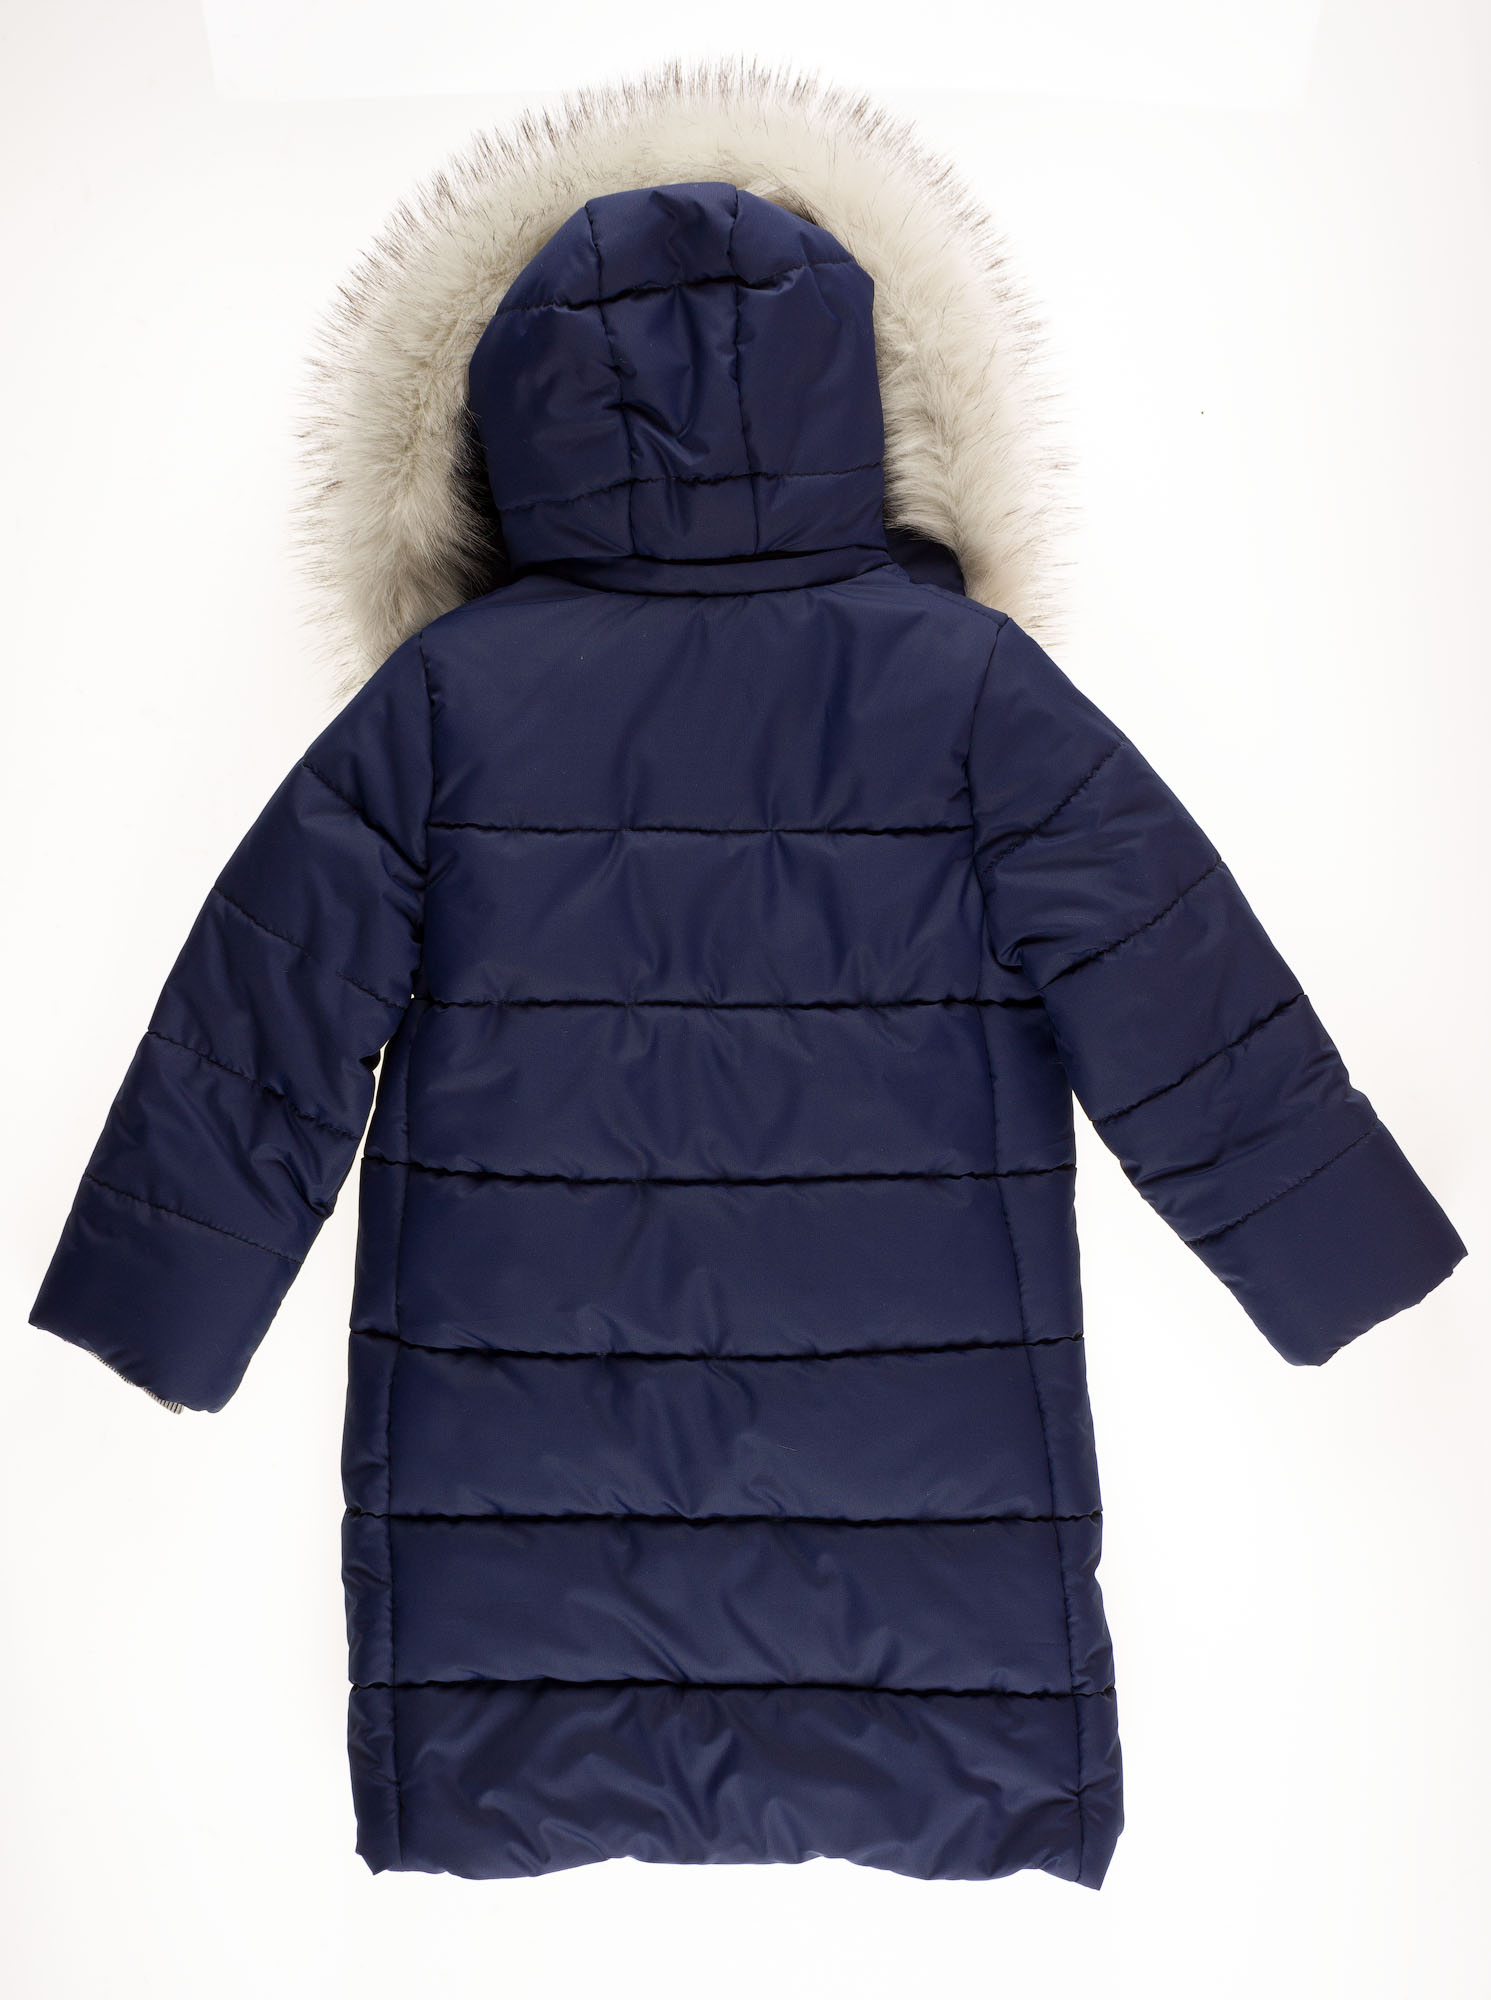 Куртка-пальто зимова для дівчинки SUZIE Береніс темно-синя ПТ-36711 - світлина